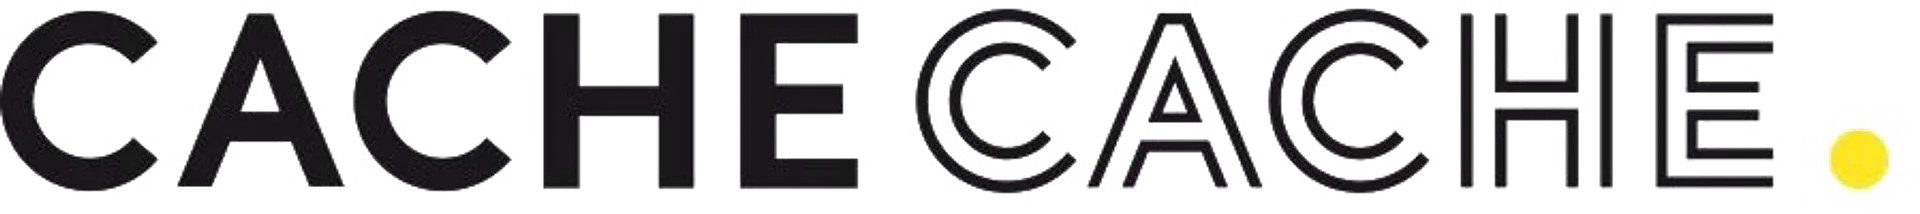 CACHE CACHE logo